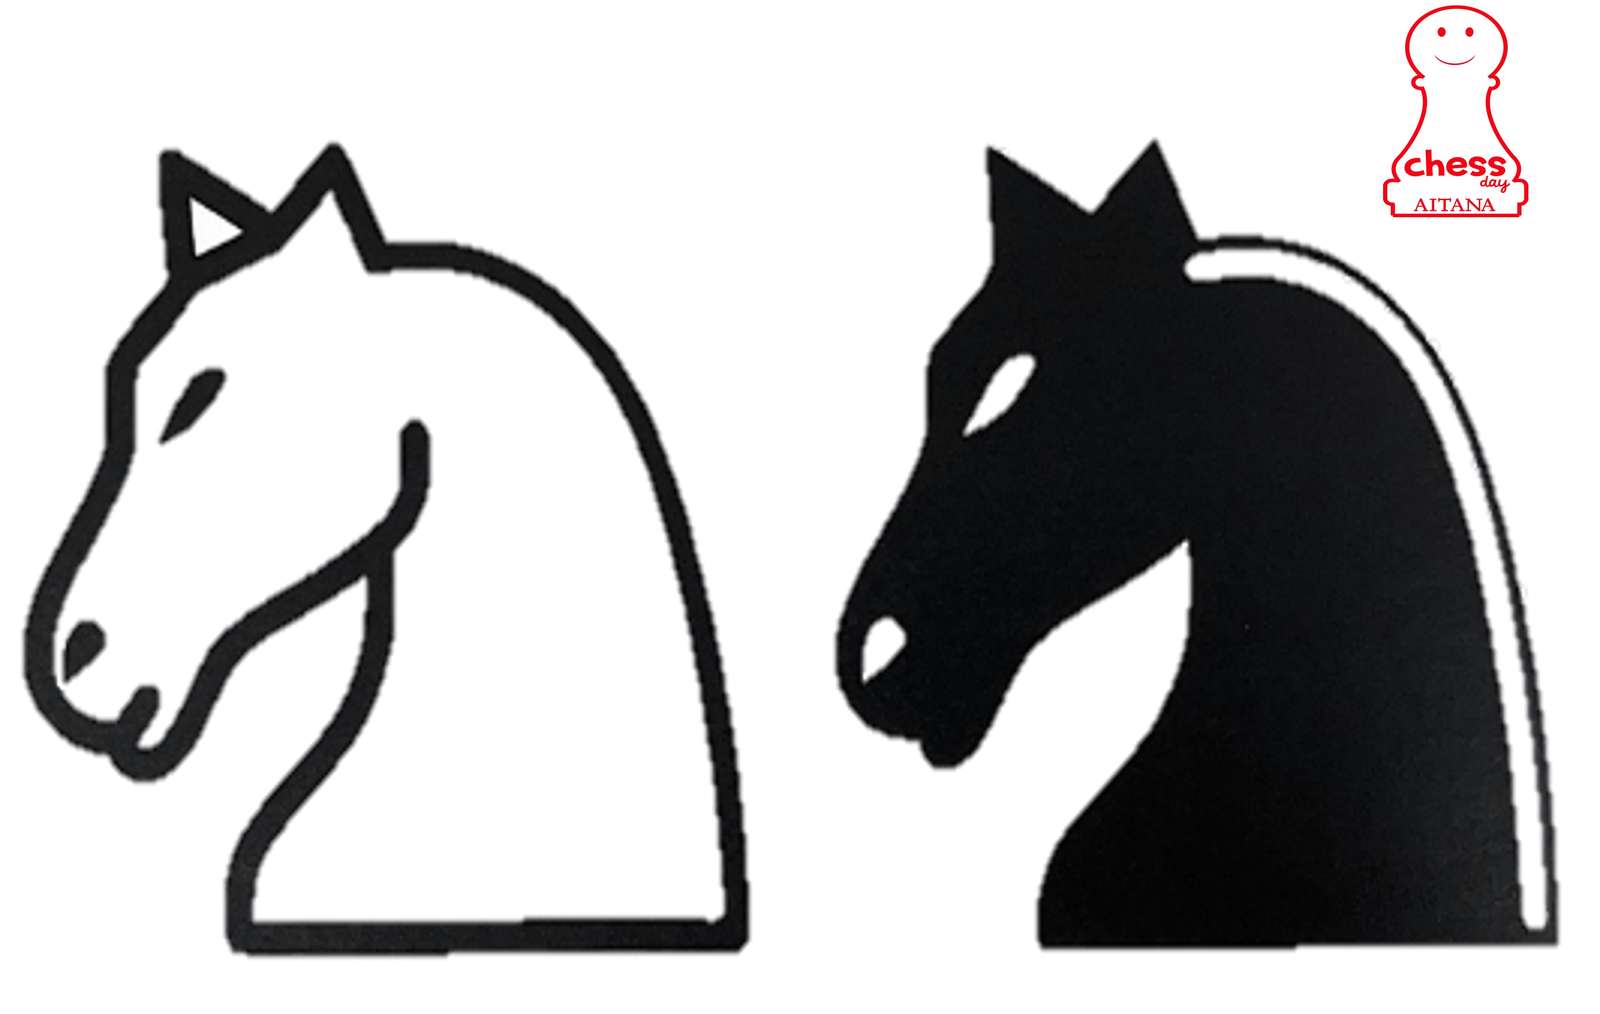 Horses de ajedrez rompecabezas en línea